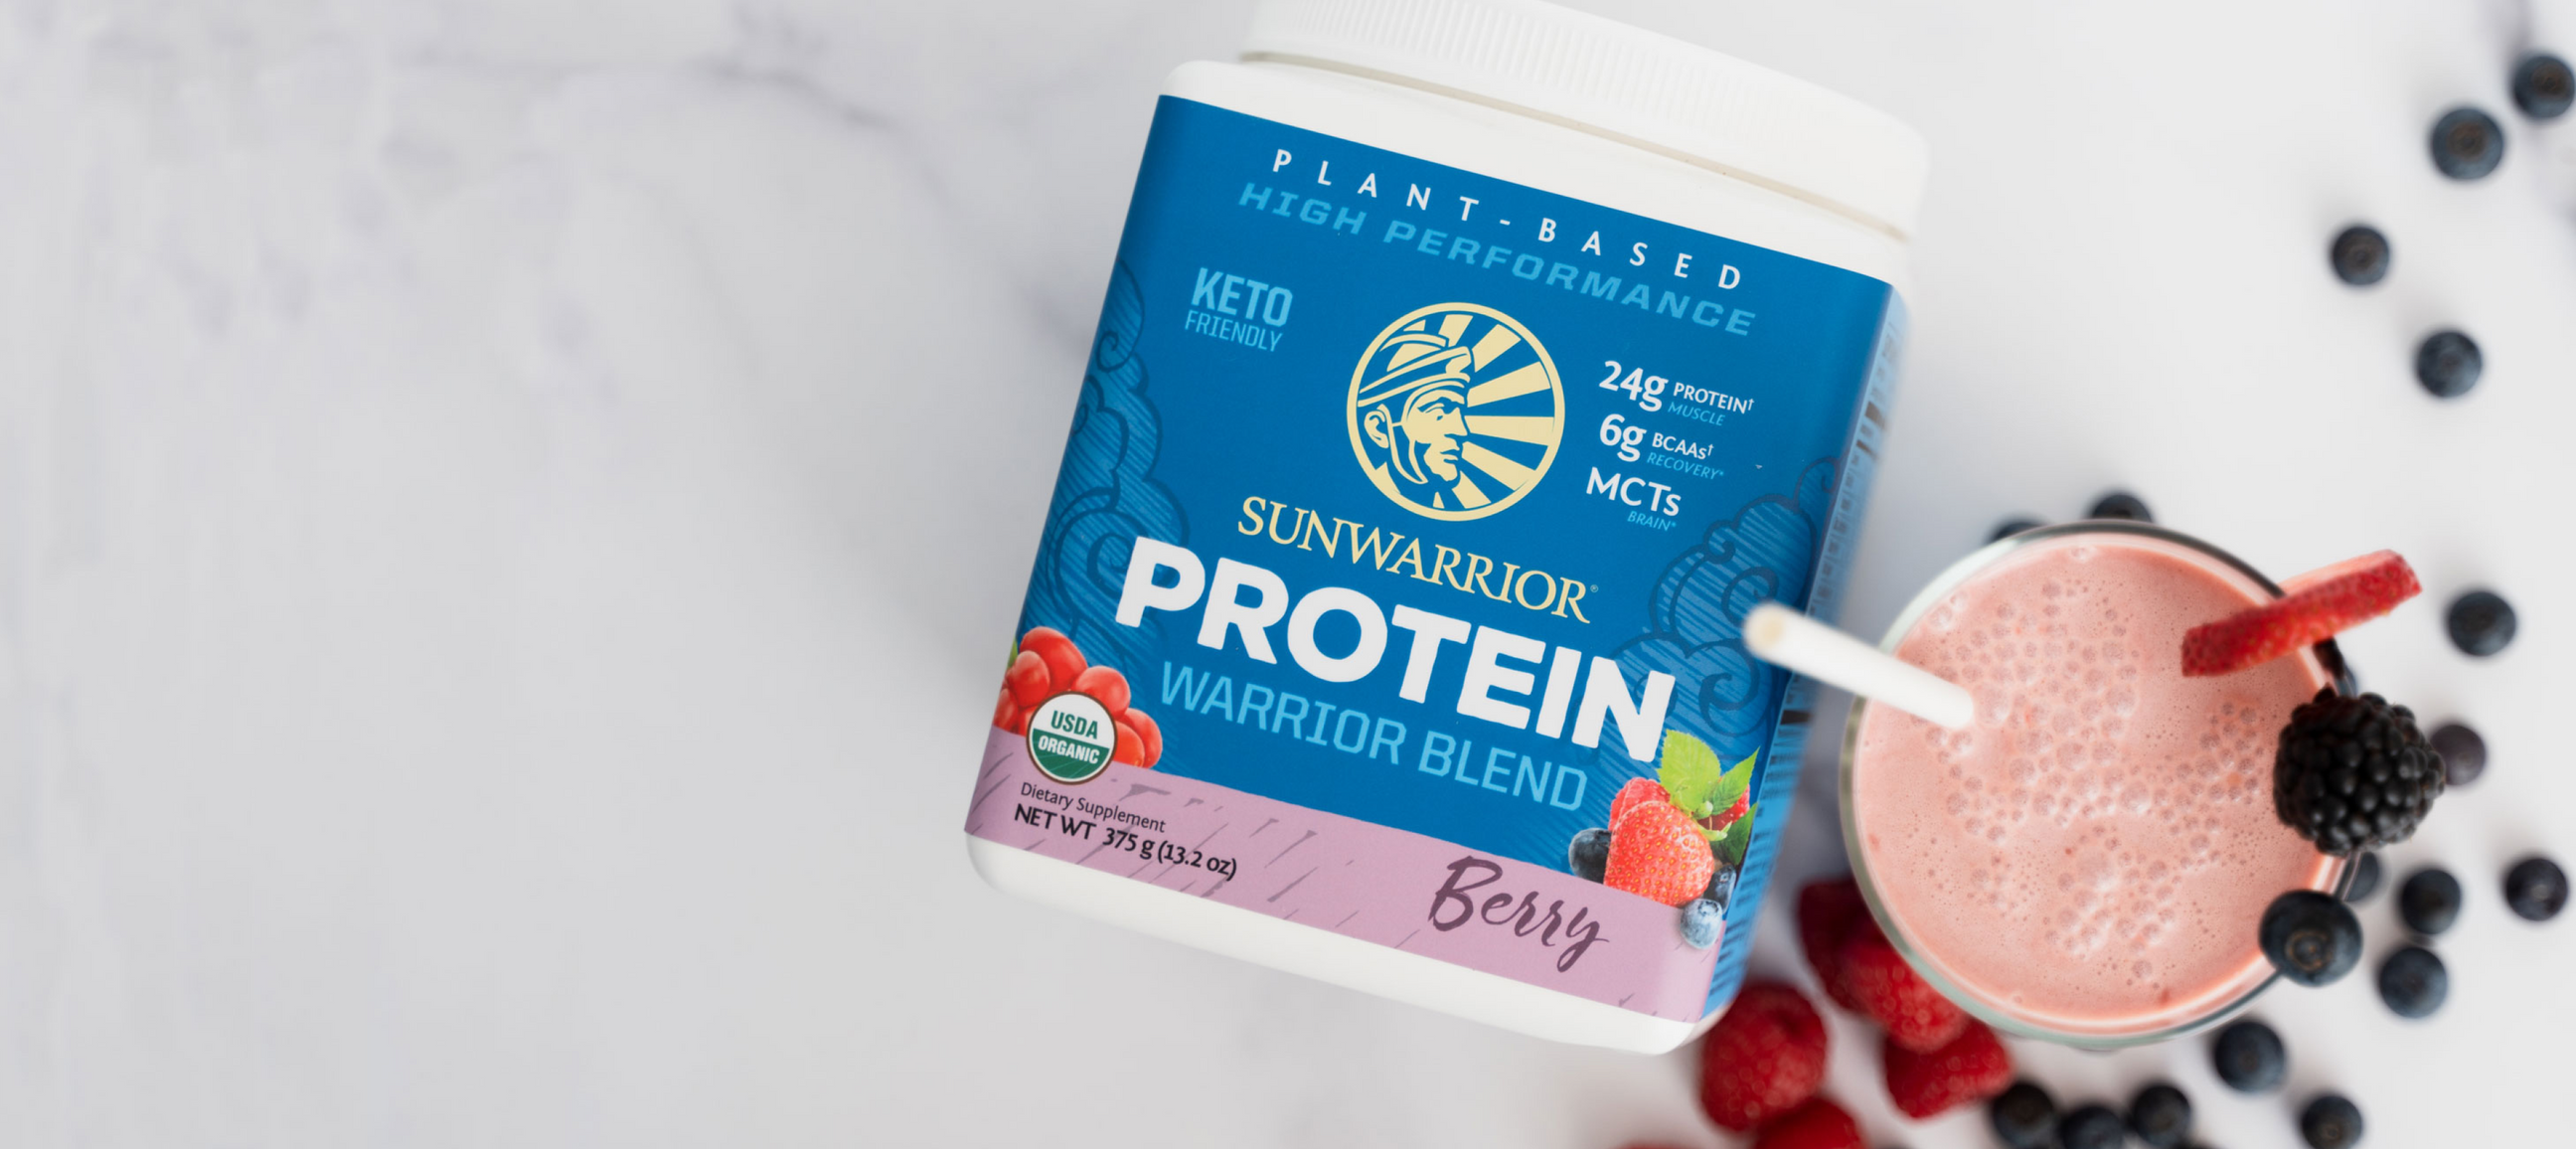 Bottle of berry protein from sunwarrior brand